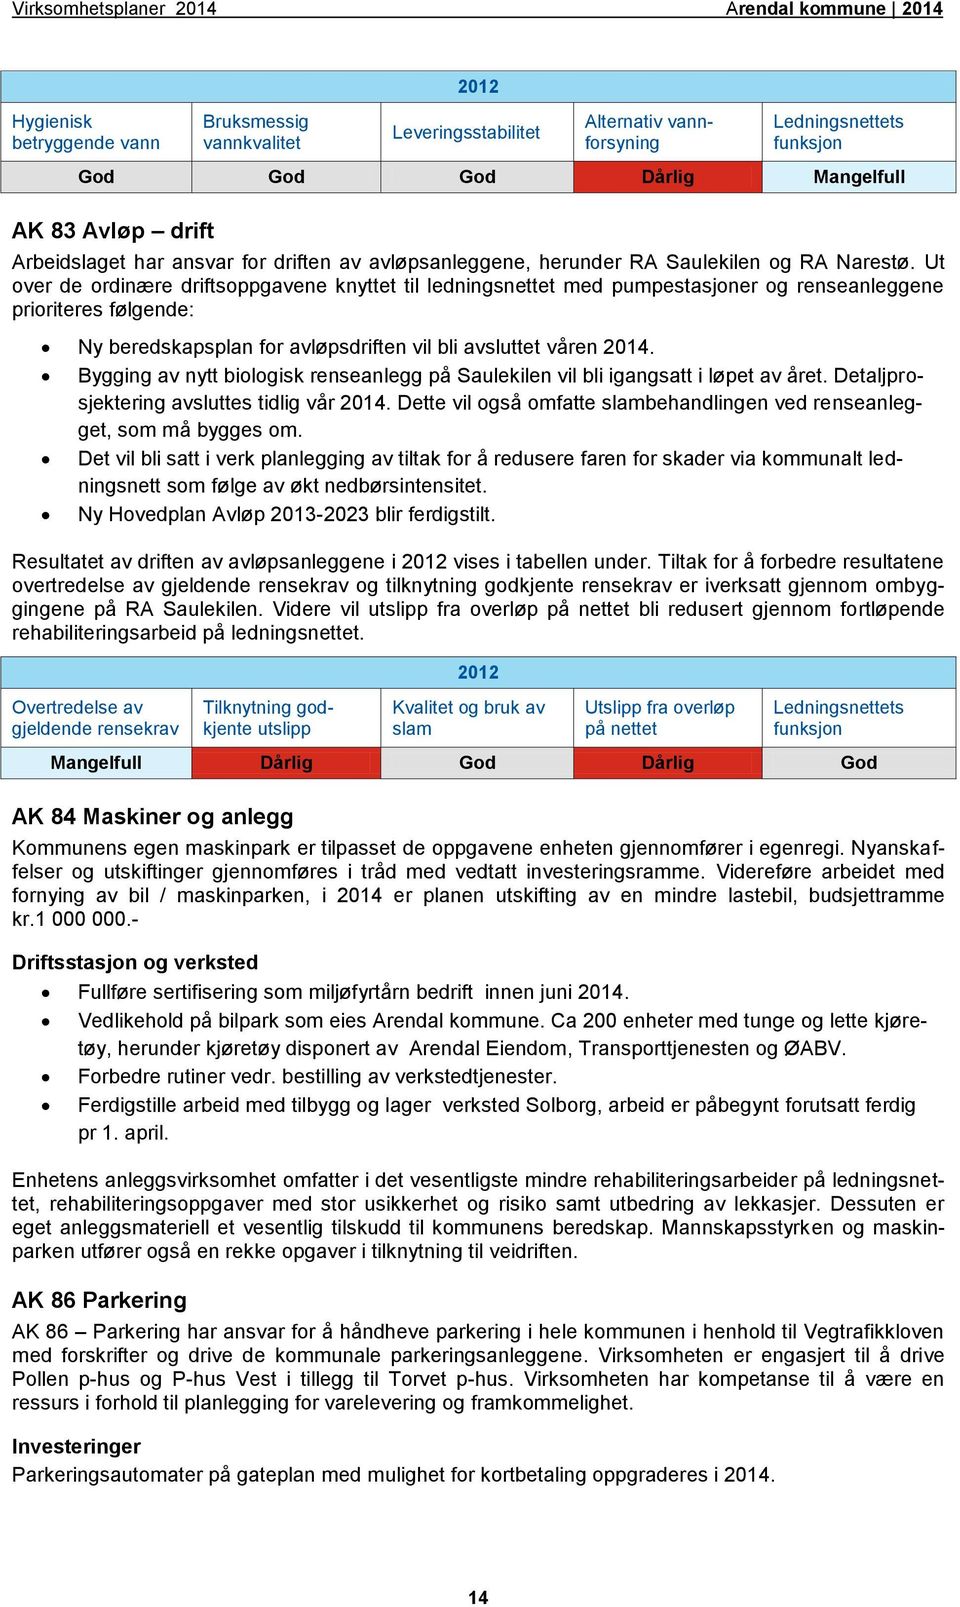 HR, IKT og kvalitet - Arendal kommune